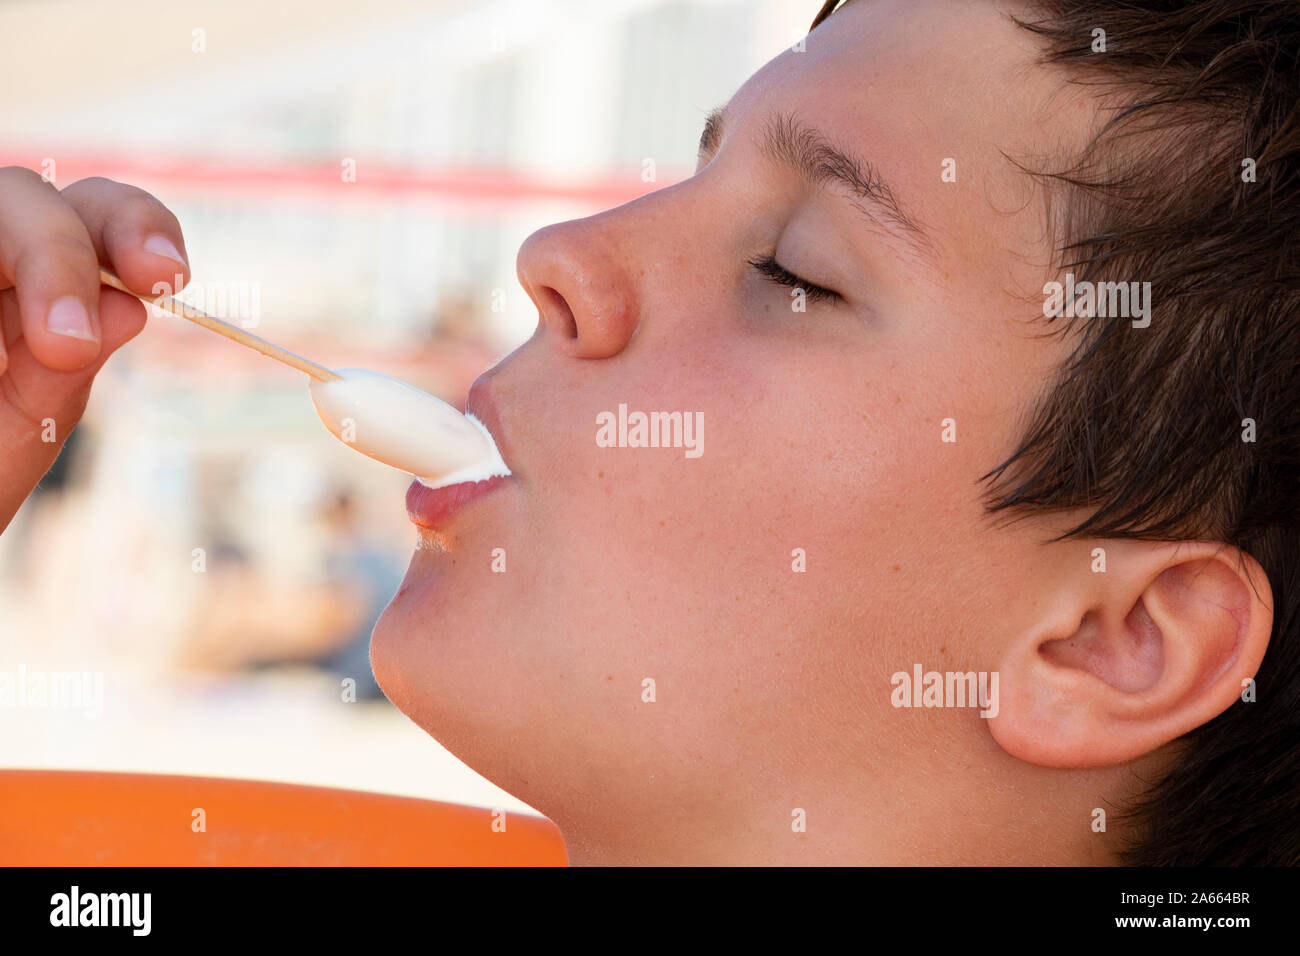 Eine Nahaufnahme Foto eines Jungen essen eine Weiße Vanille Eis am Stiel Stockfoto